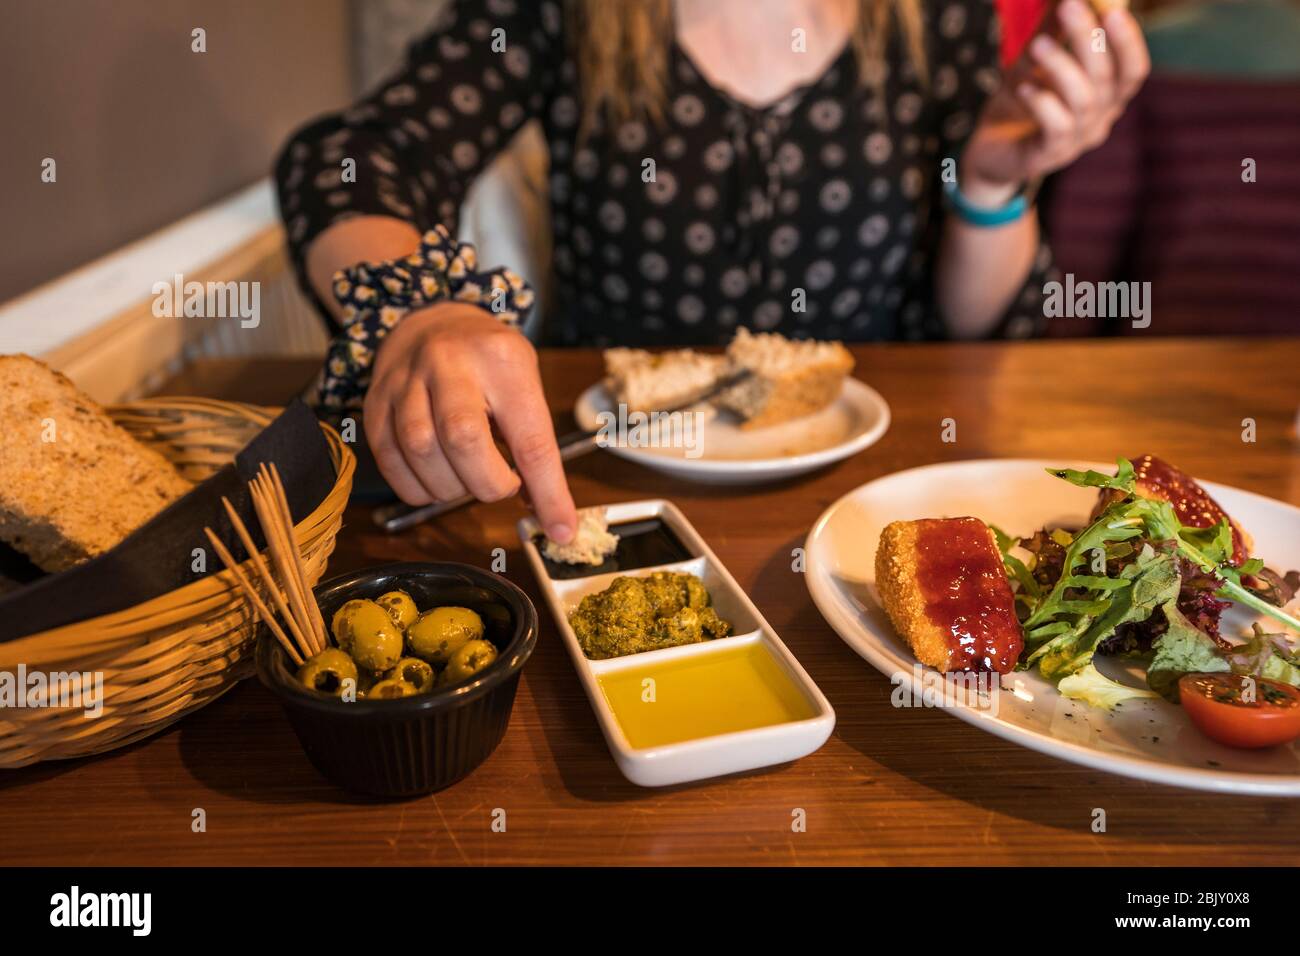 La persona femminile immerge il pane in salsa mentre mangia gli antipasti di brie e e olive cotte, aceto balsamico, olio di oliva e pesto con pane, Falkland, Fife, Foto Stock